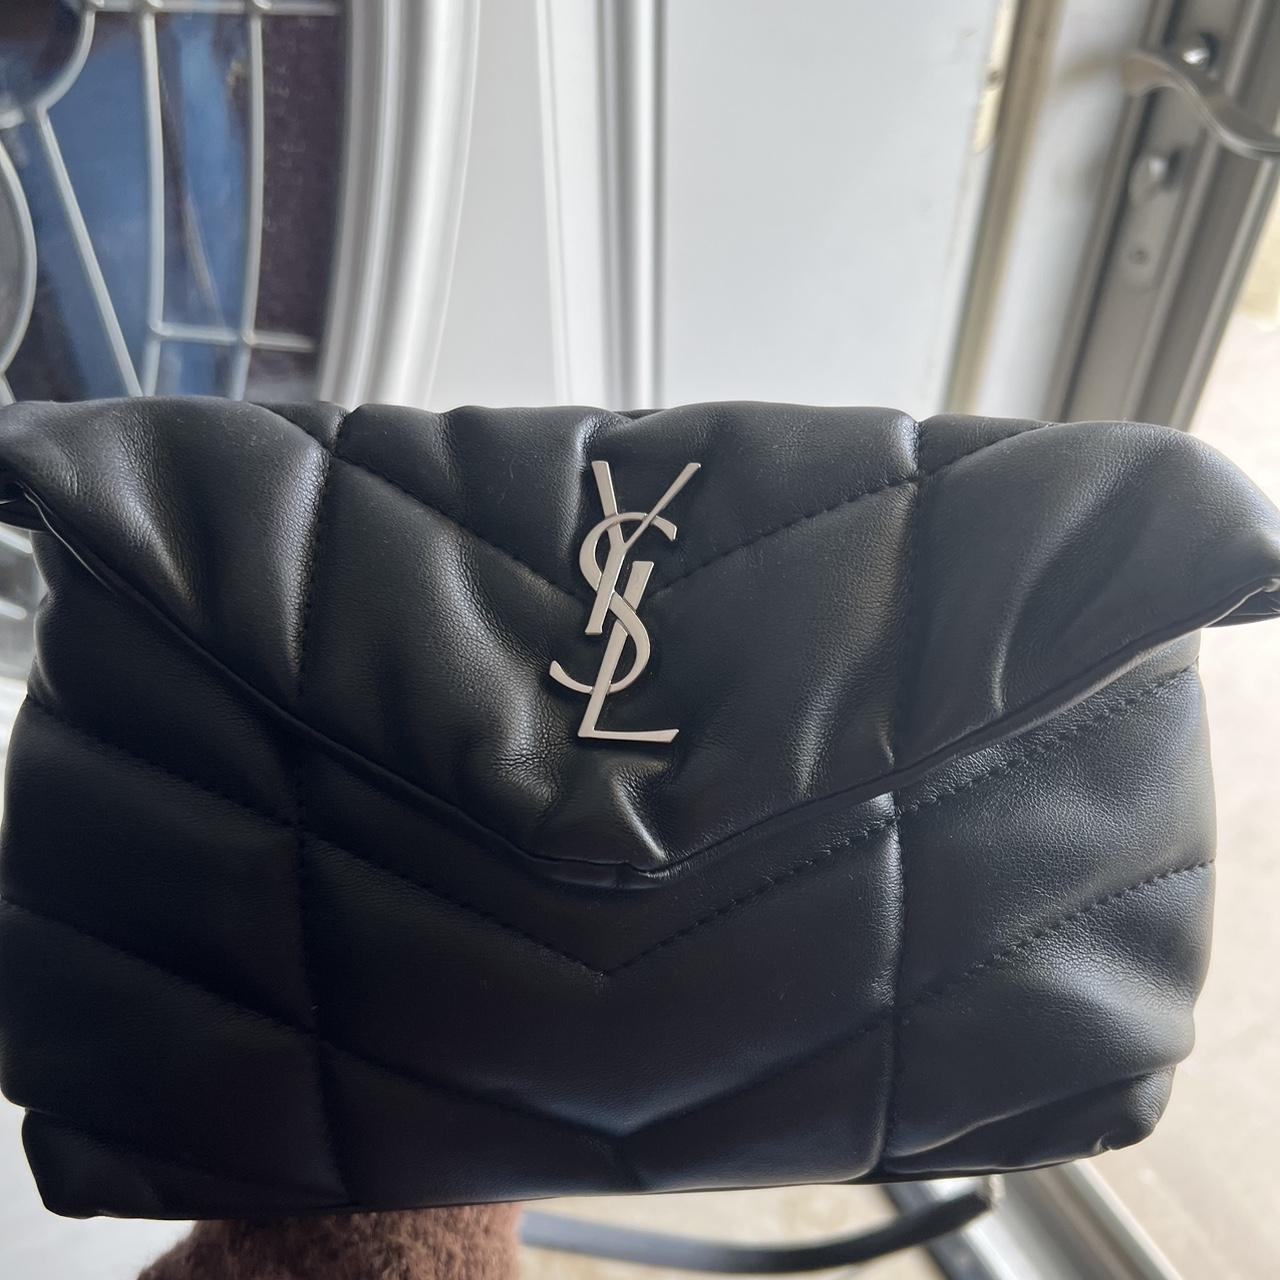 Yves Saint Laurent YSL Toy Loulou Shoulder Bag - Depop